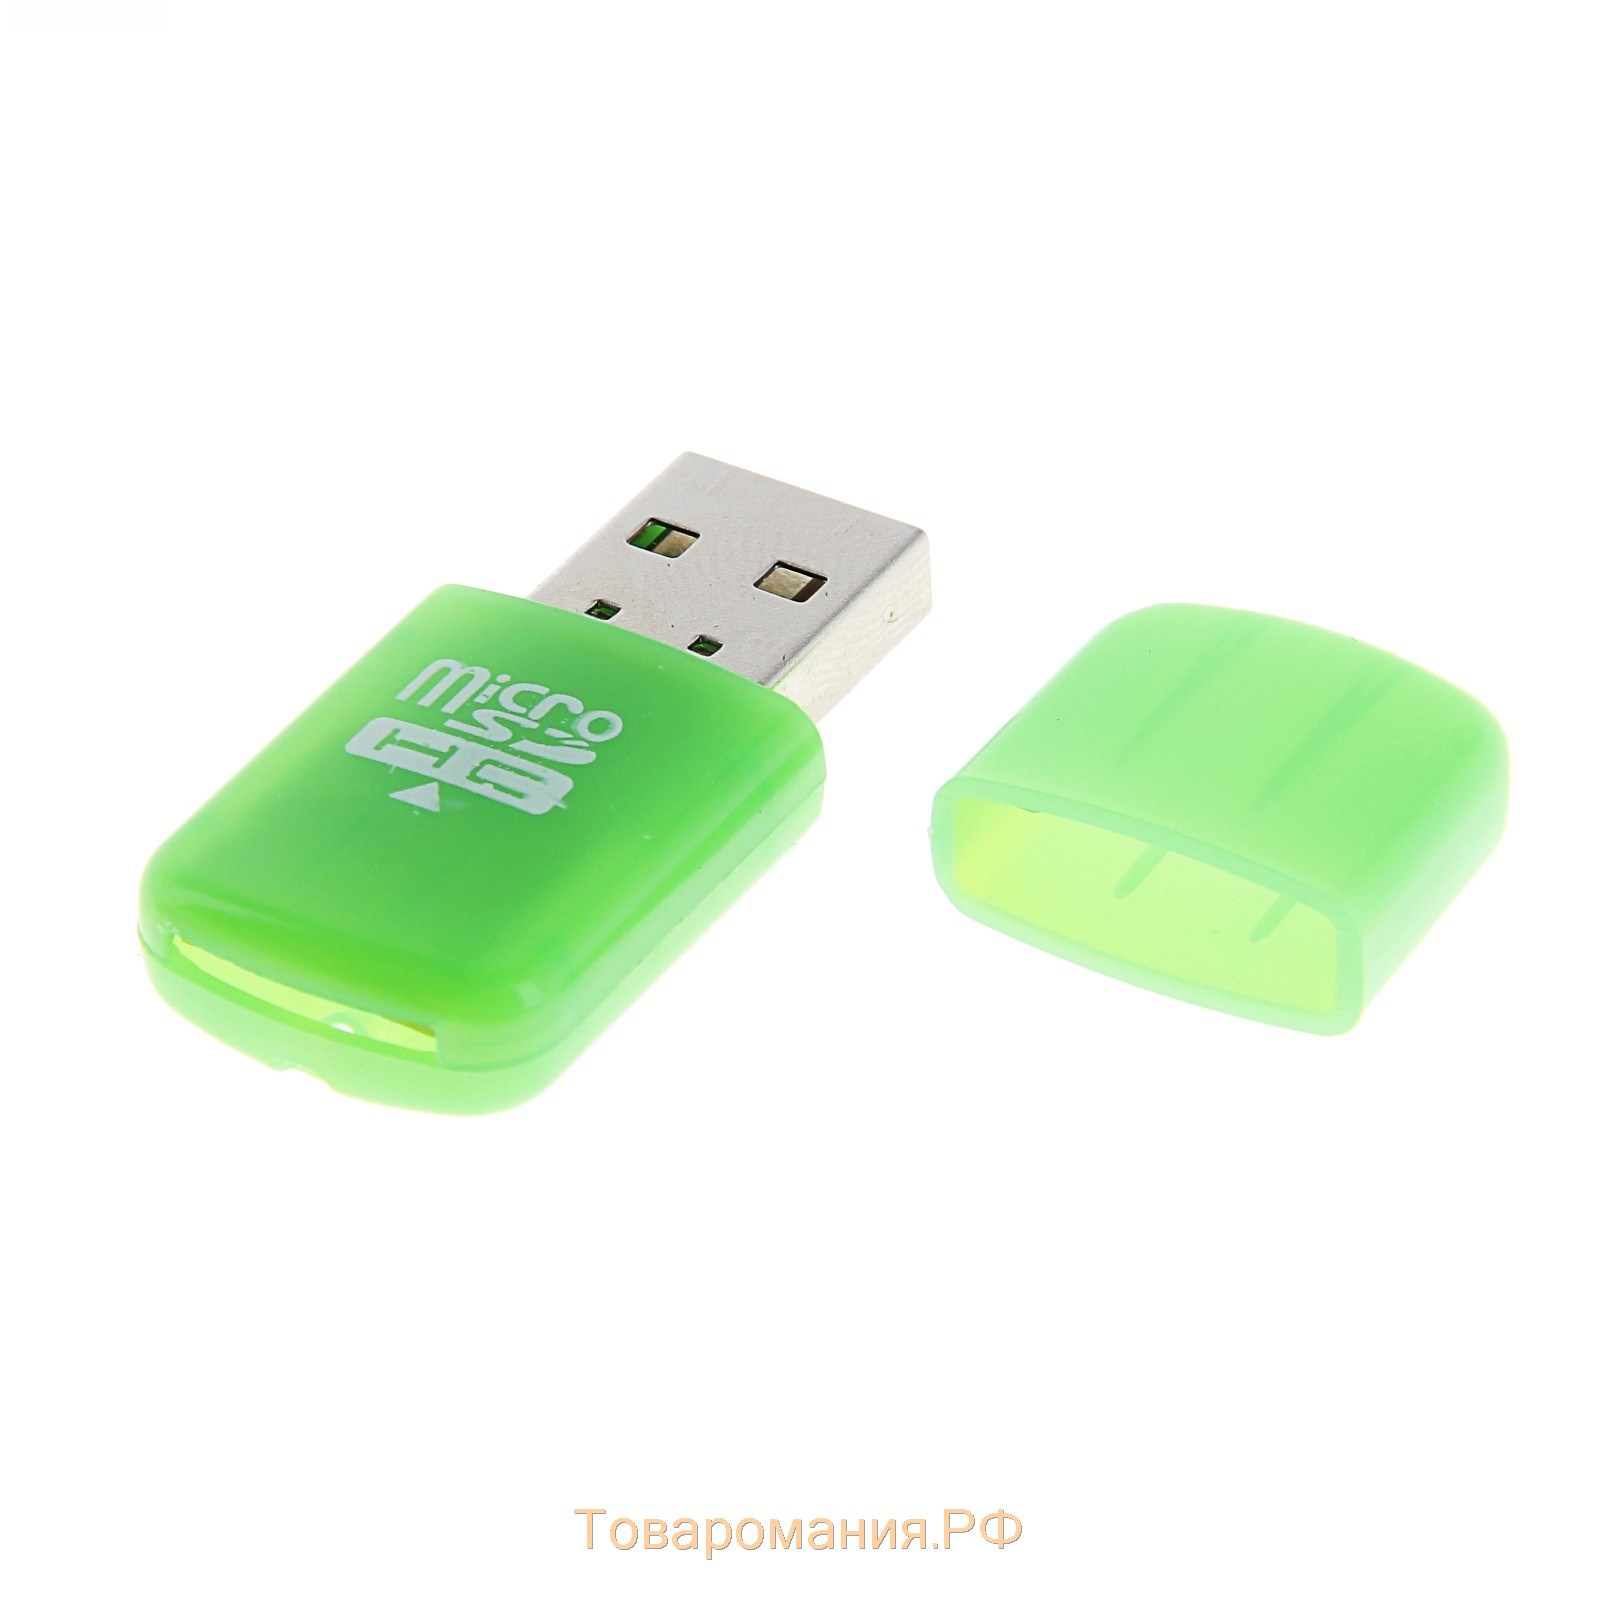 Картридер мини , для microSD, маленький, "Флеш", МИКС